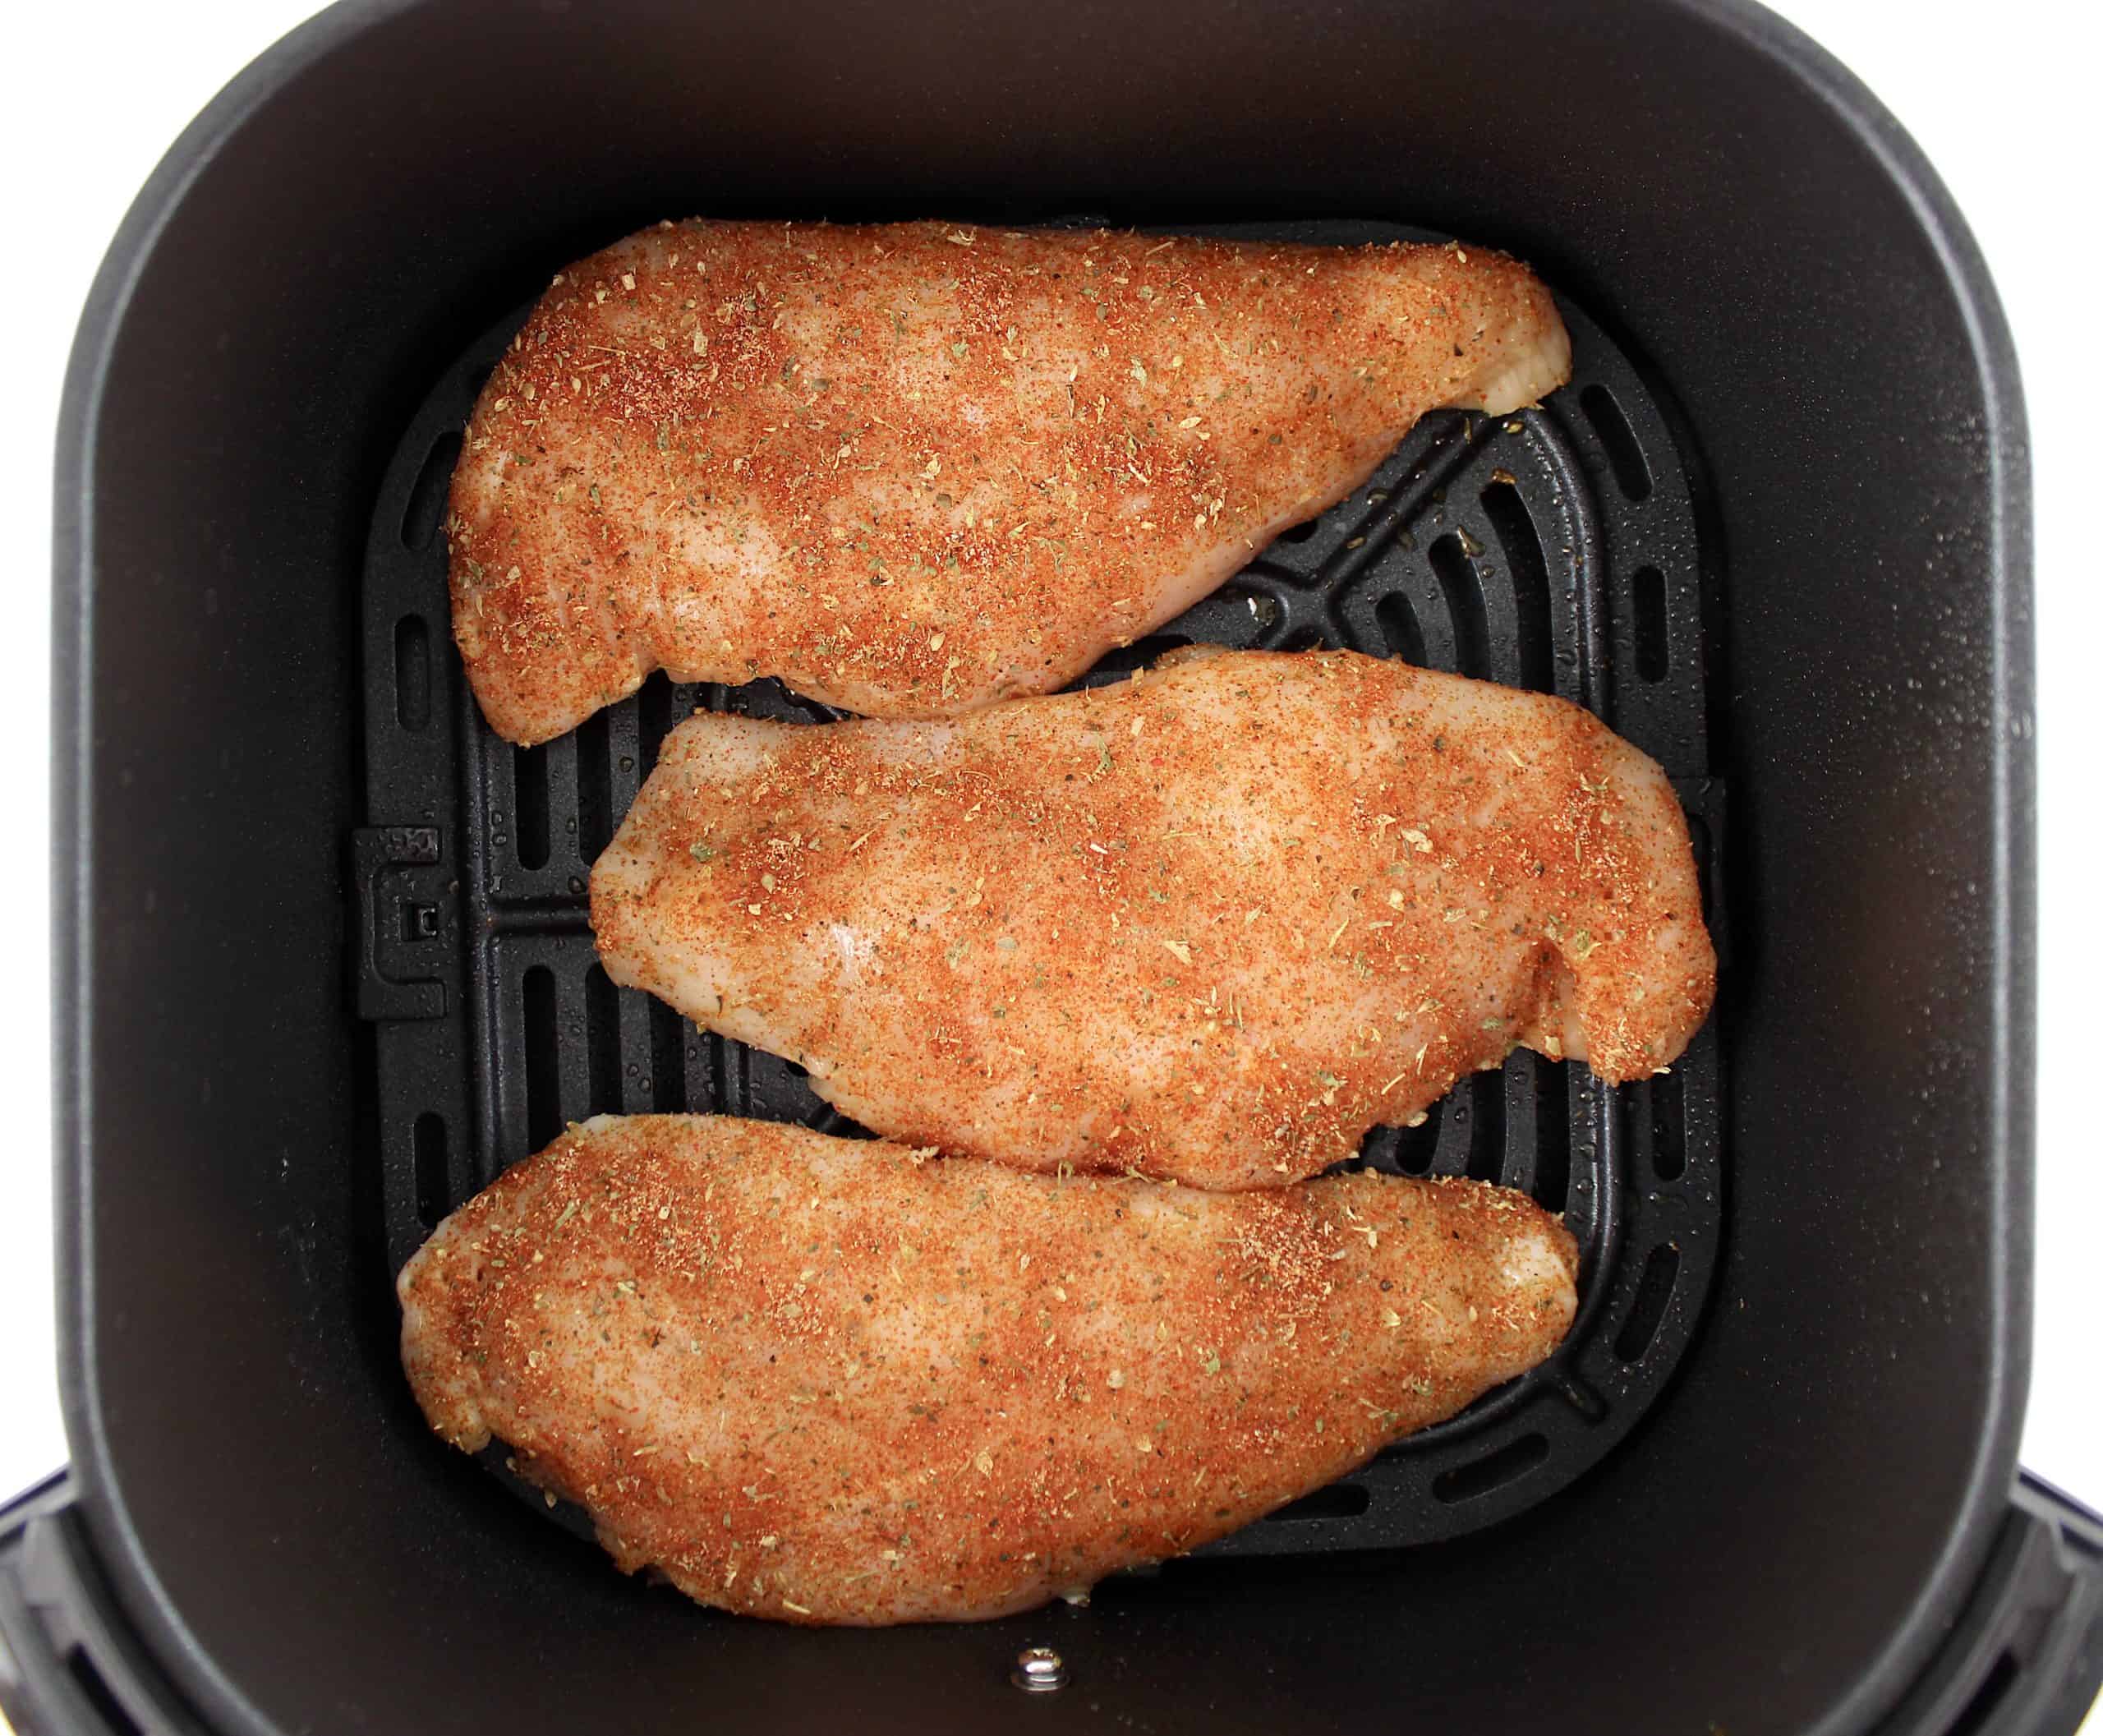 3 raw chicken breasts with seasonings in air fryer basket